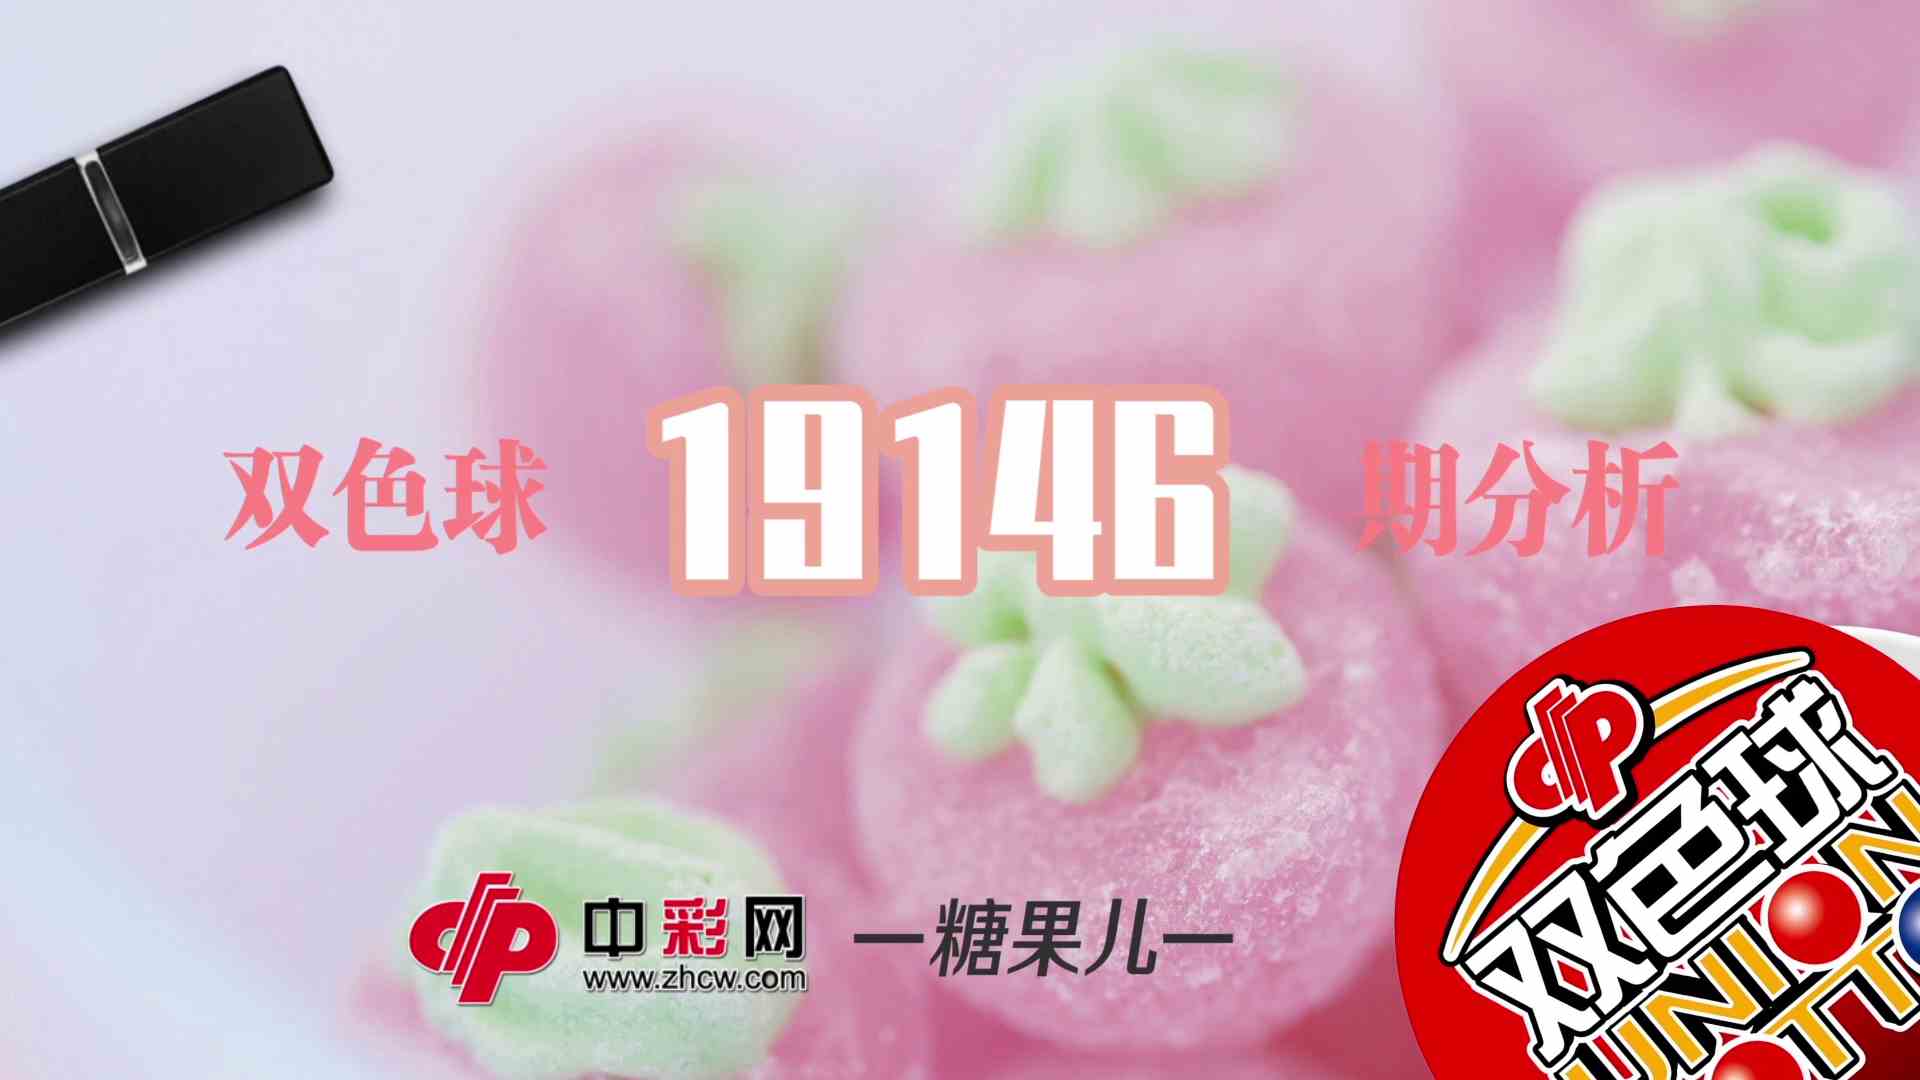 【中彩视频】糖果儿双色球第19146期